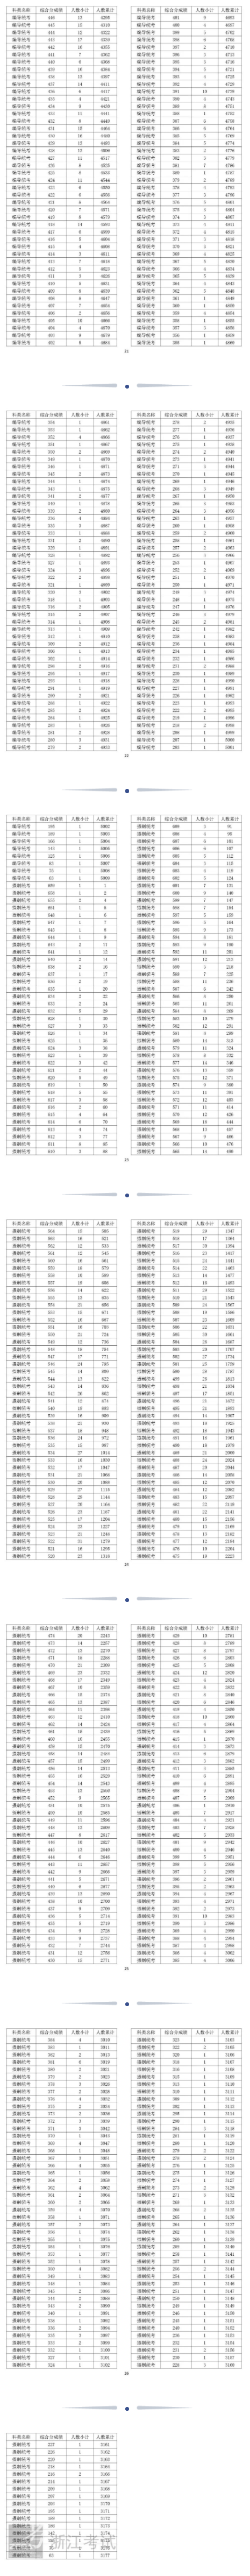 2022浙江艺术高考一分一段表（美术、音乐、舞蹈、影视、时装...）